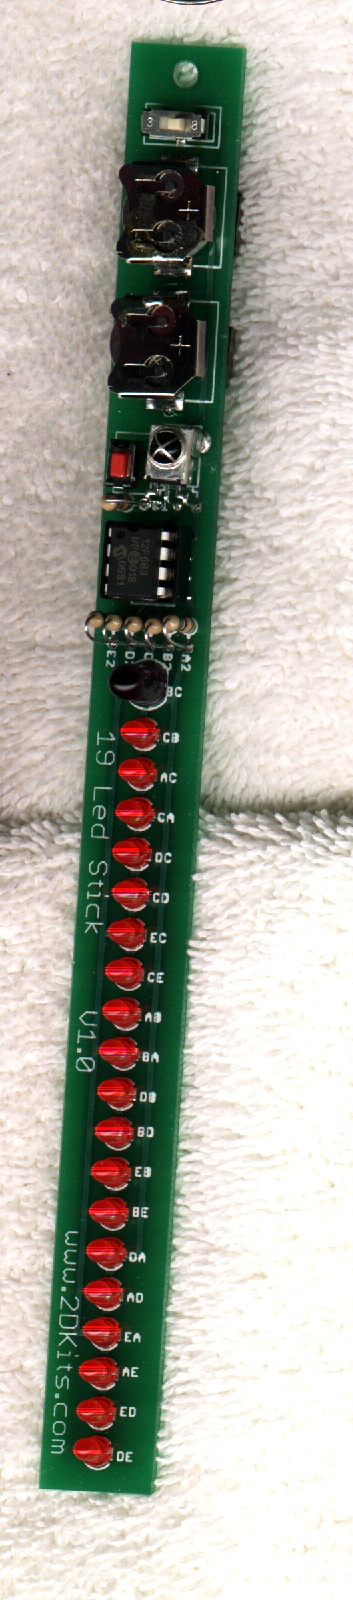 19 LED Stick Blinkie Kit